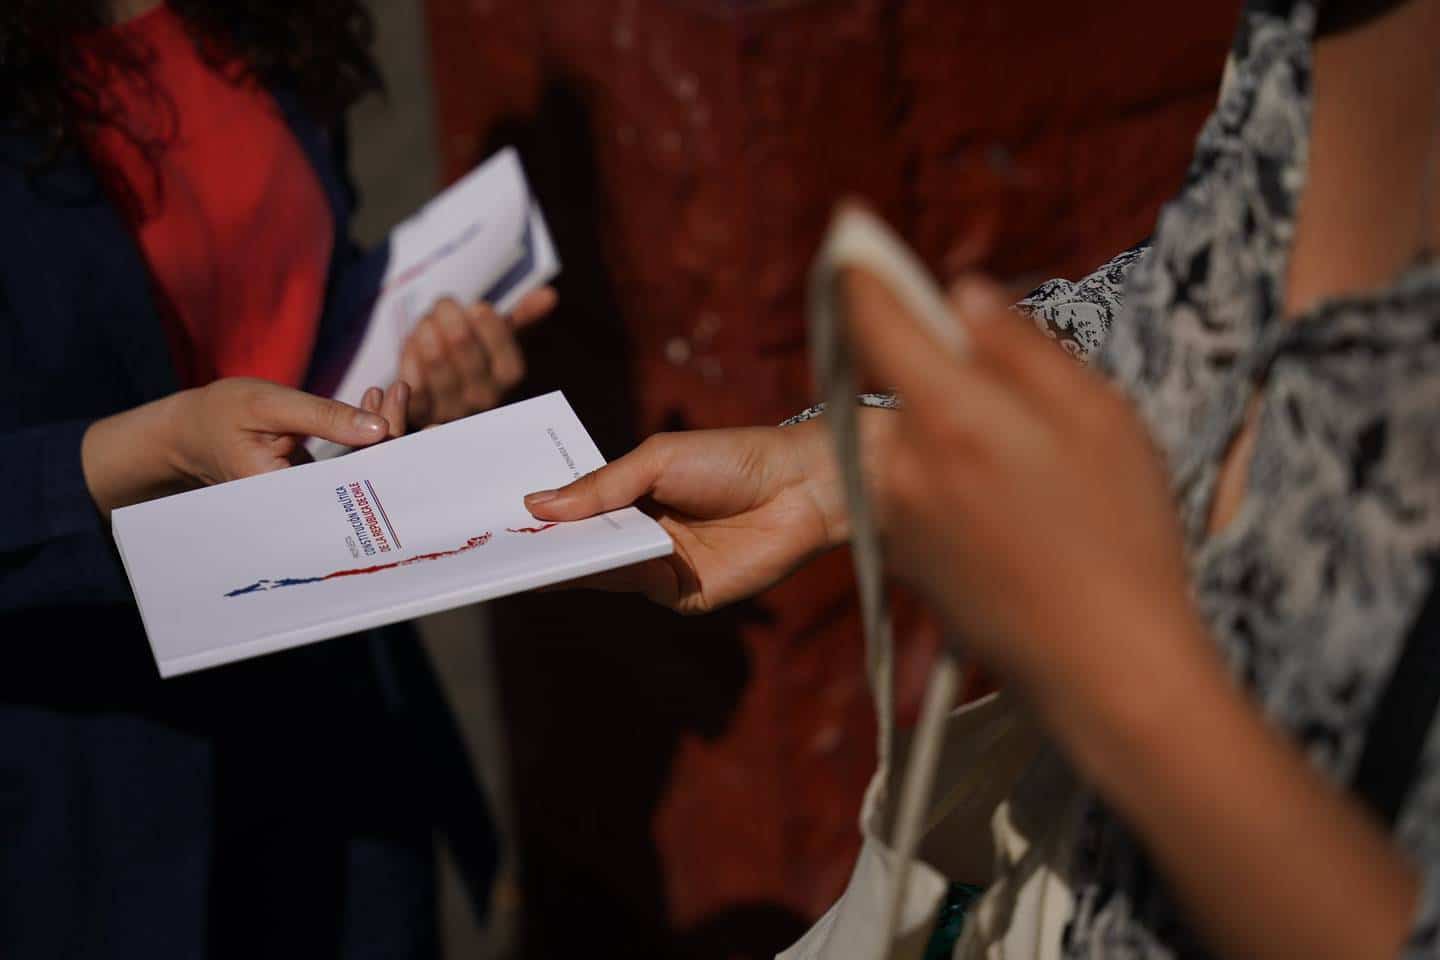 Chilenos rejeitam proposta de Constituição em plebiscito